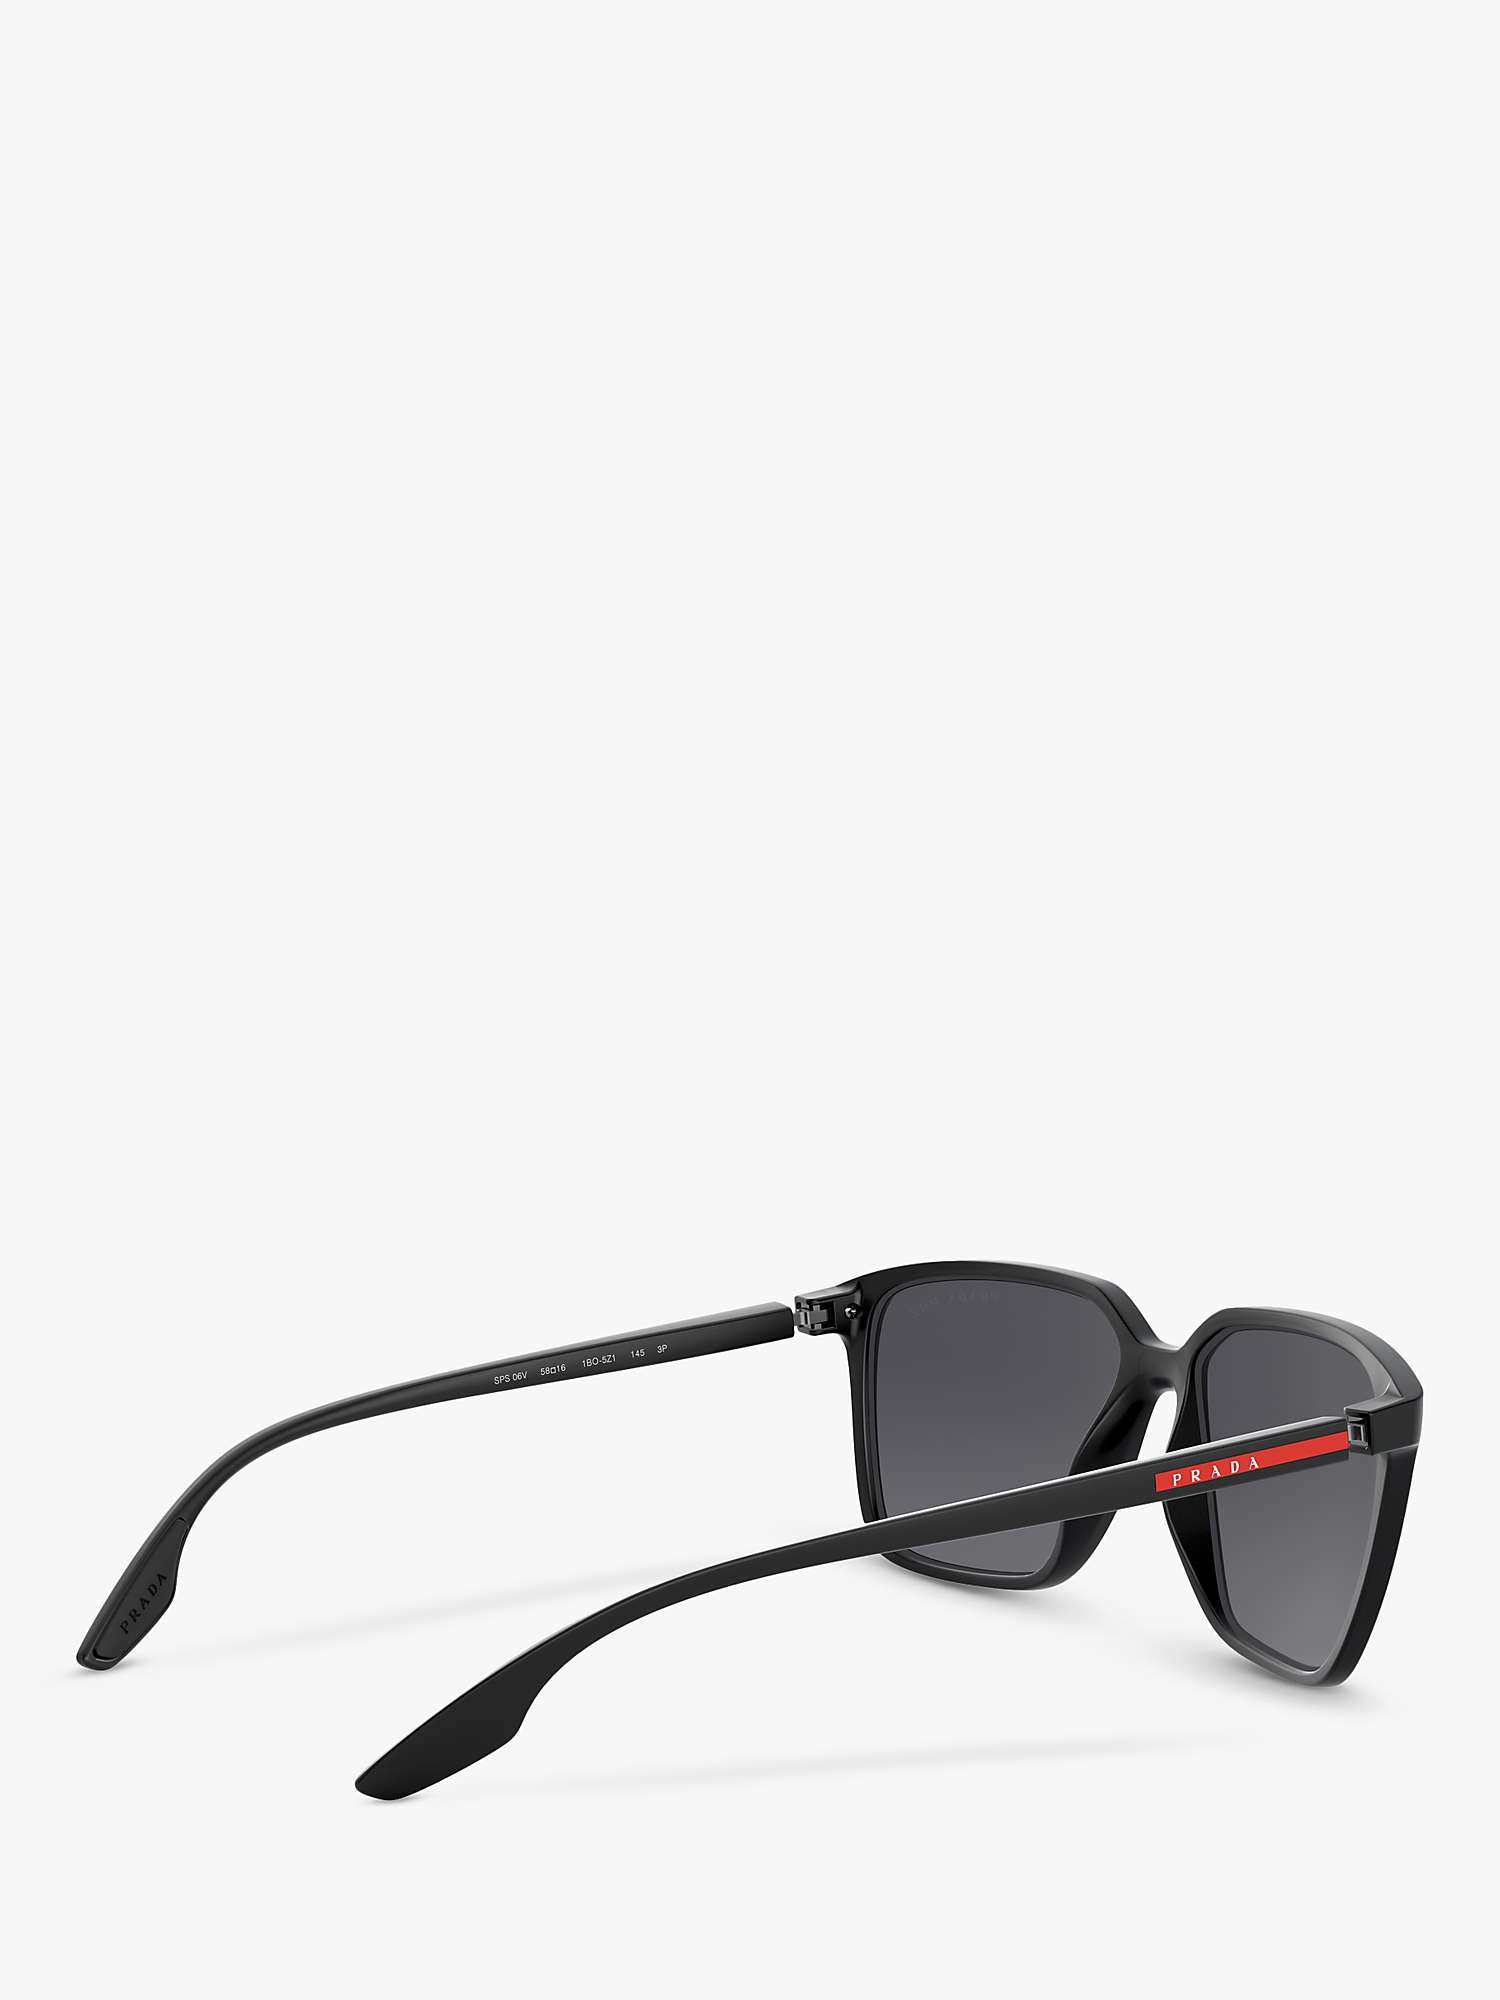 Buy Prada Linea Rossa PS 06VS Men's Polarised Square Sunglasses, Black/Grey Online at johnlewis.com